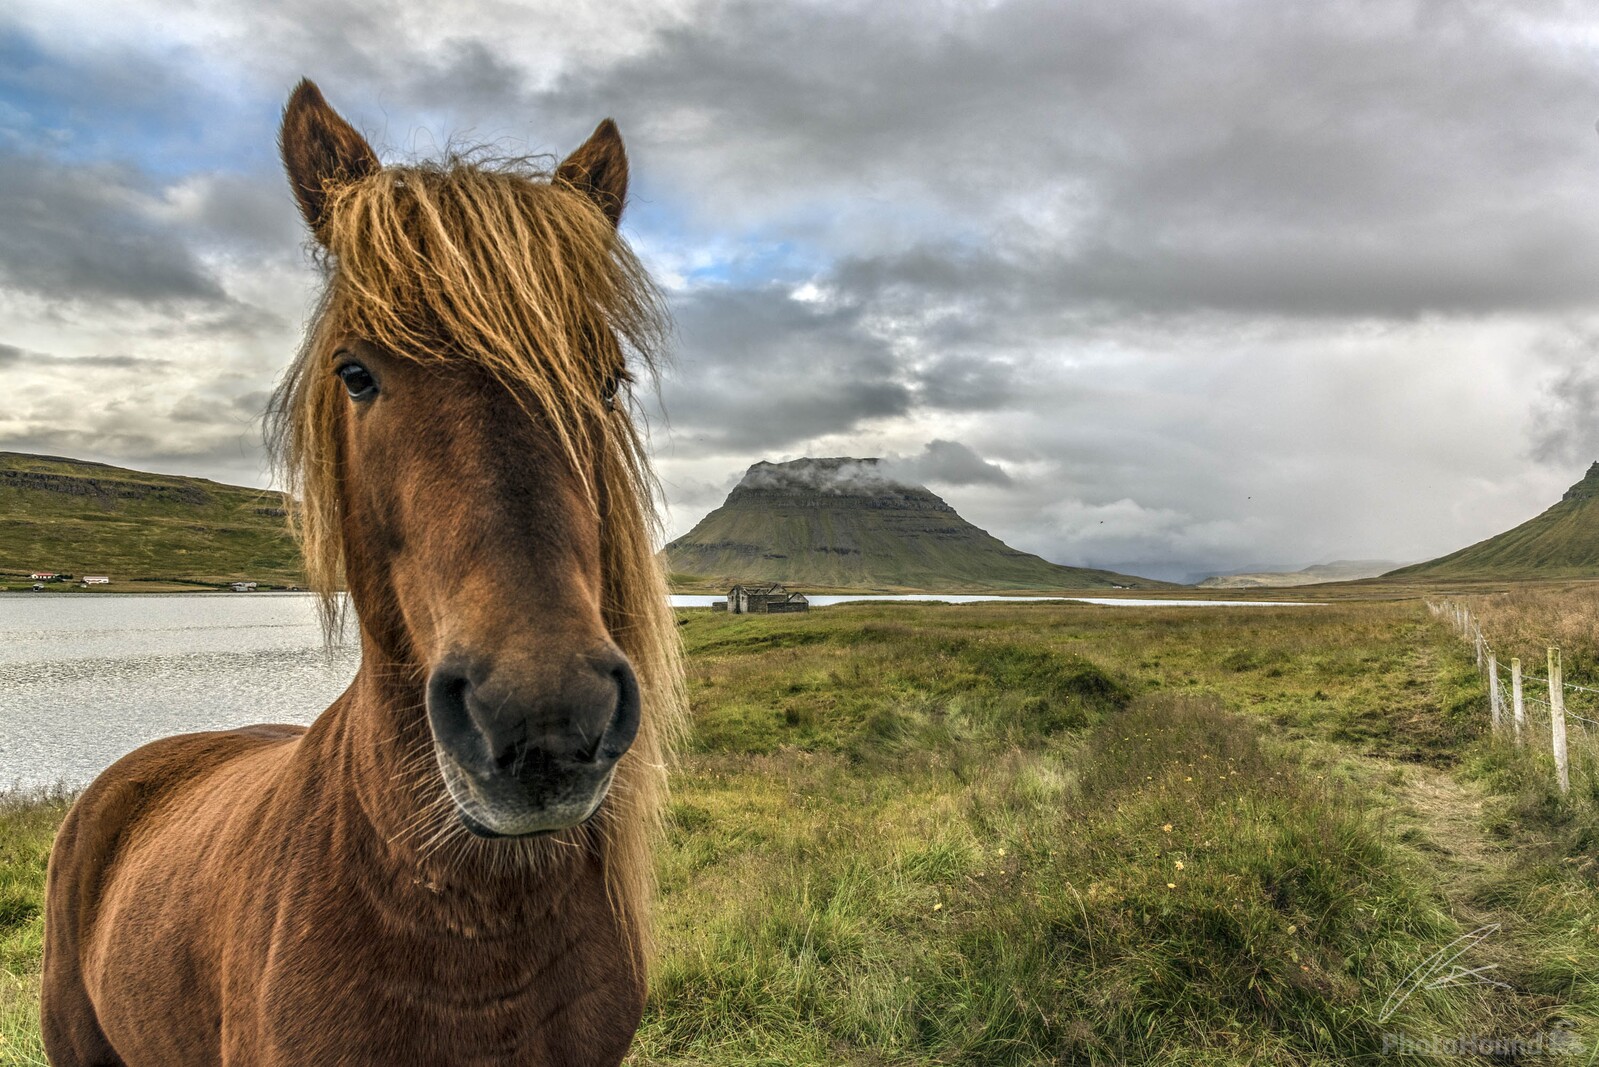 Image of Kirkjufell by Patrick Hulley